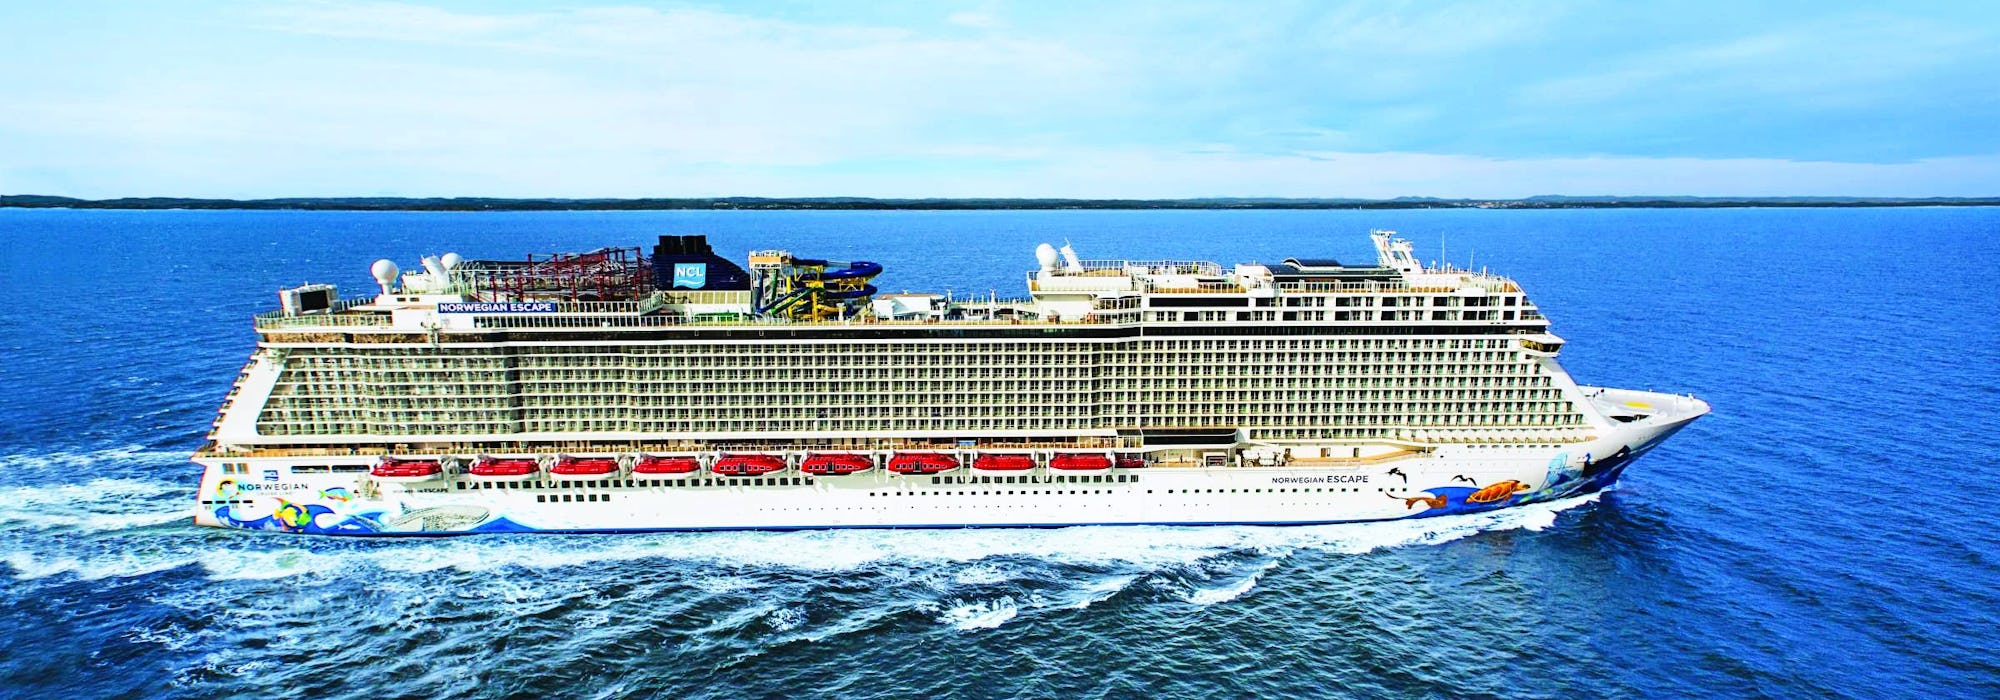 Norwegian Escape - Norwegian Cruise Line